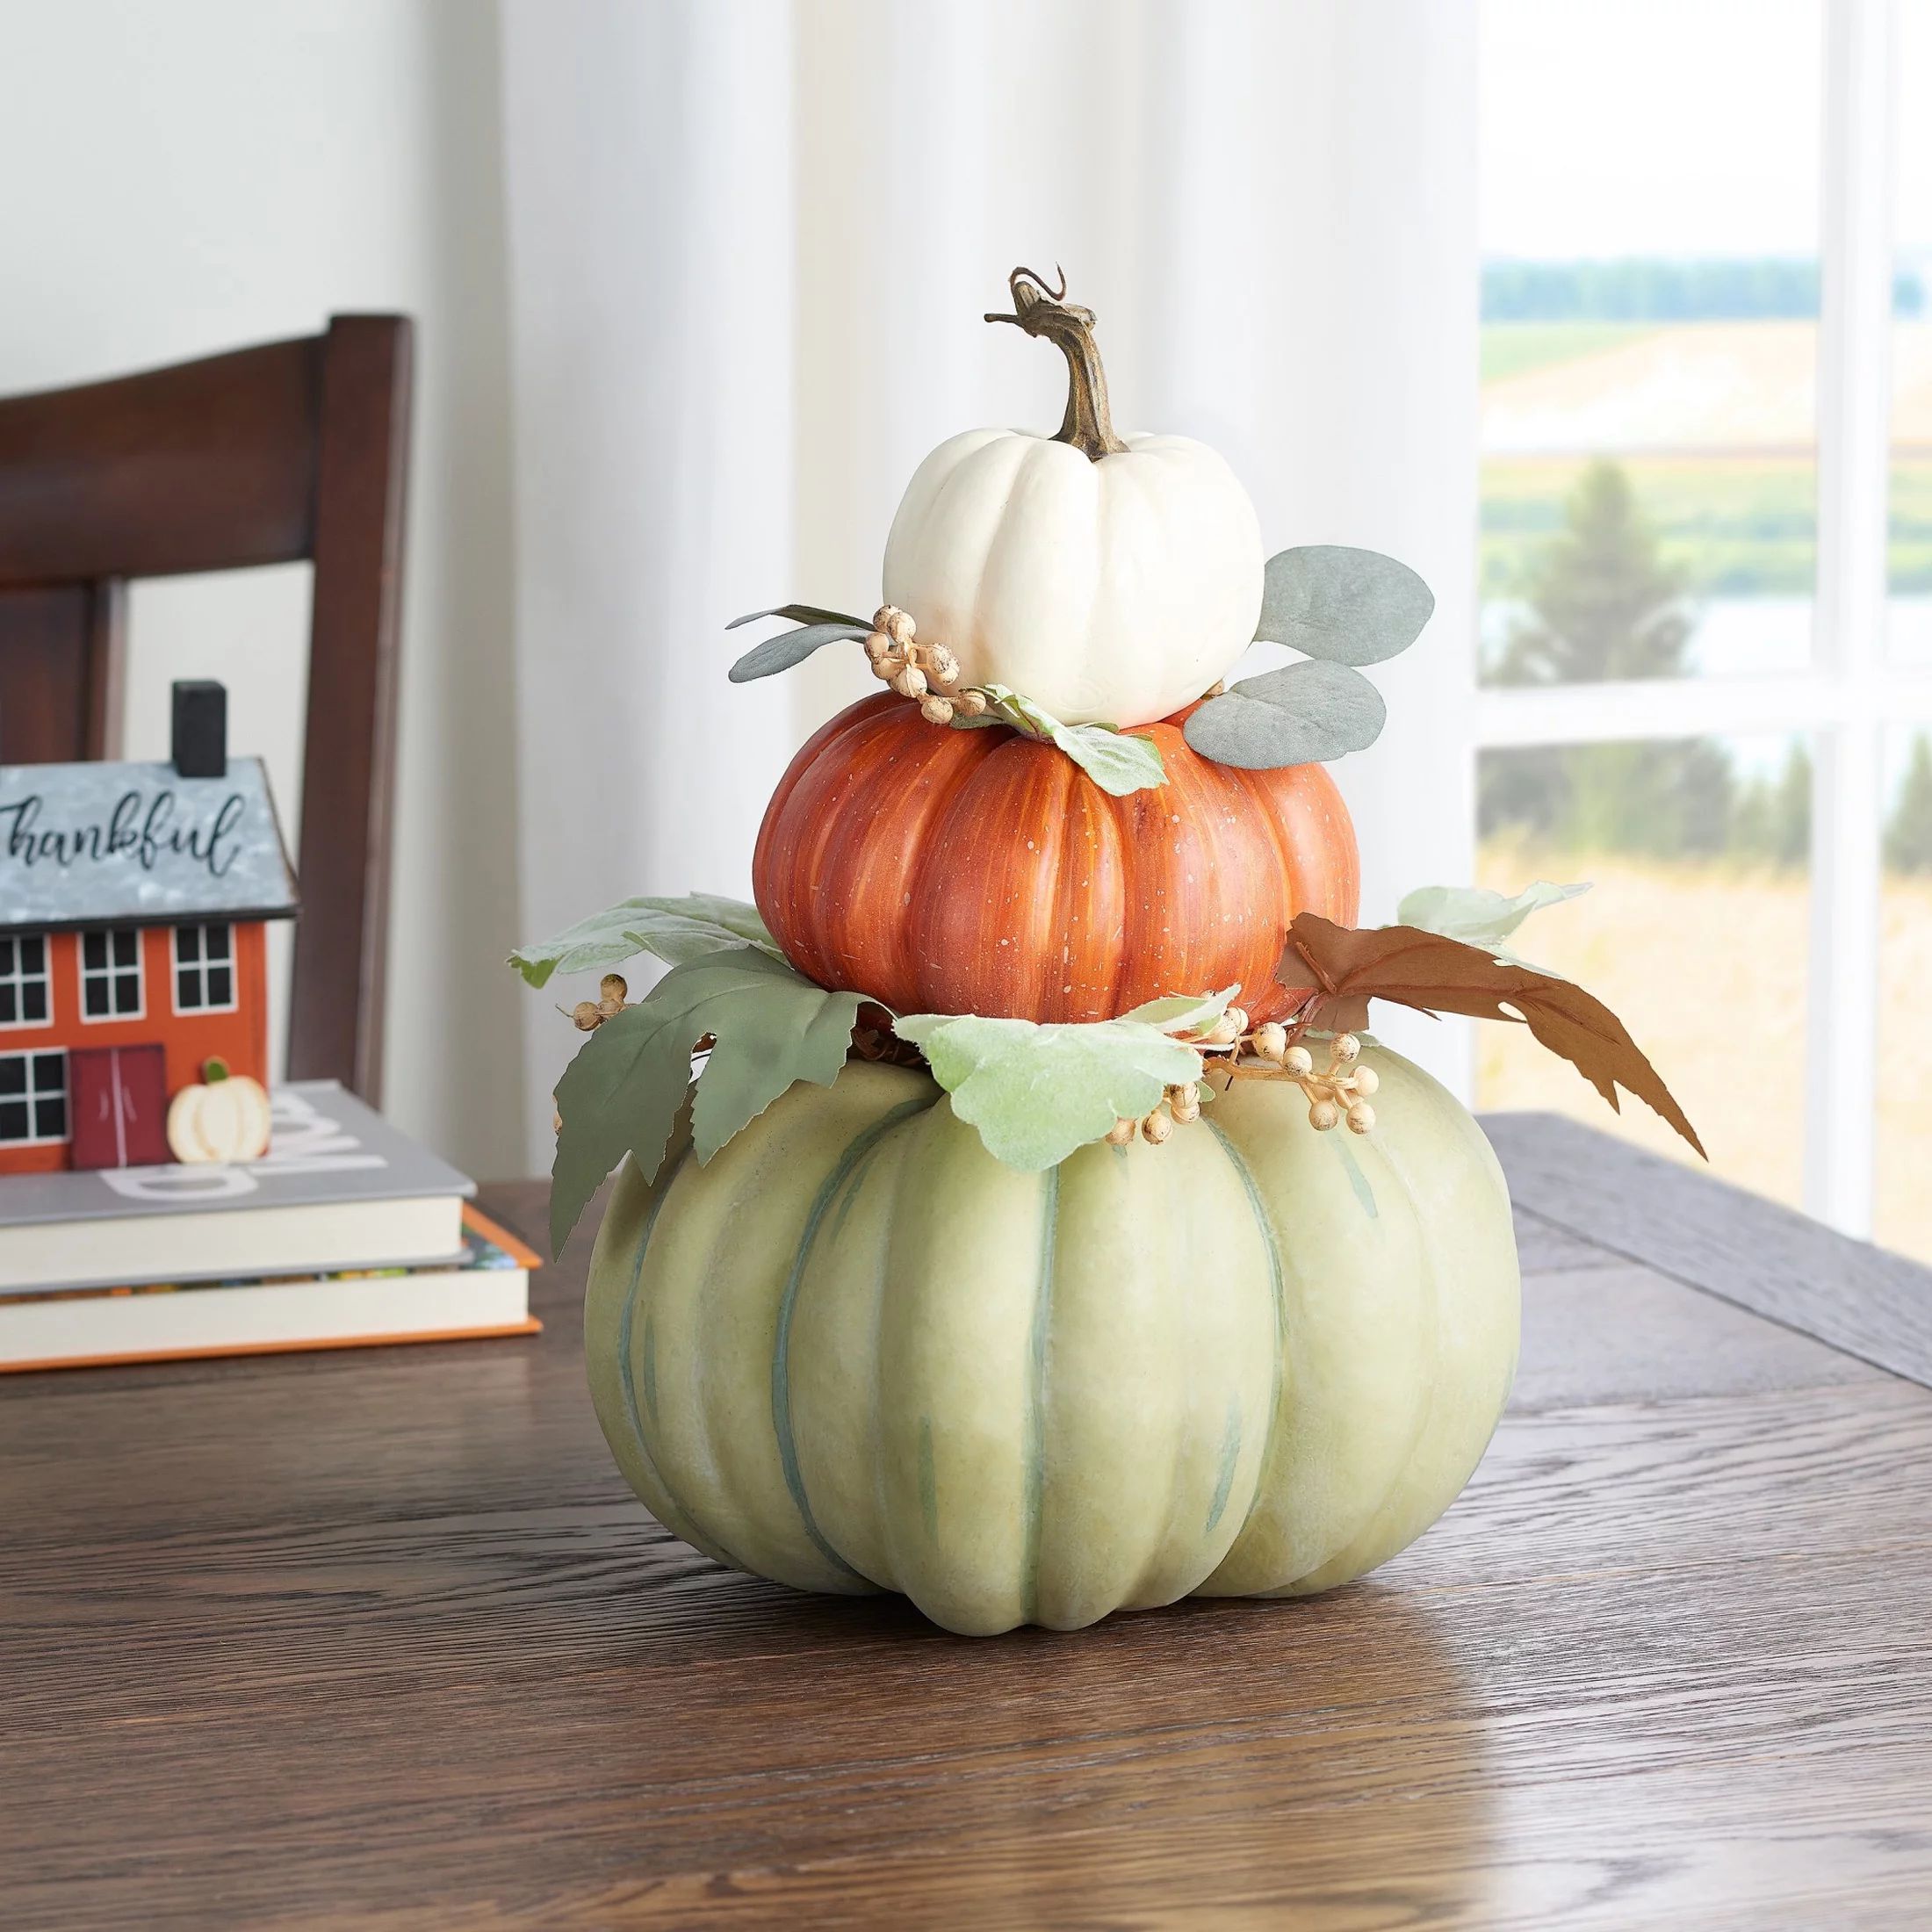 Harvest 14 in Stacked Cream/Orange/Green Foam Pumpkin Decoration, Way to Celebrate | Walmart (US)